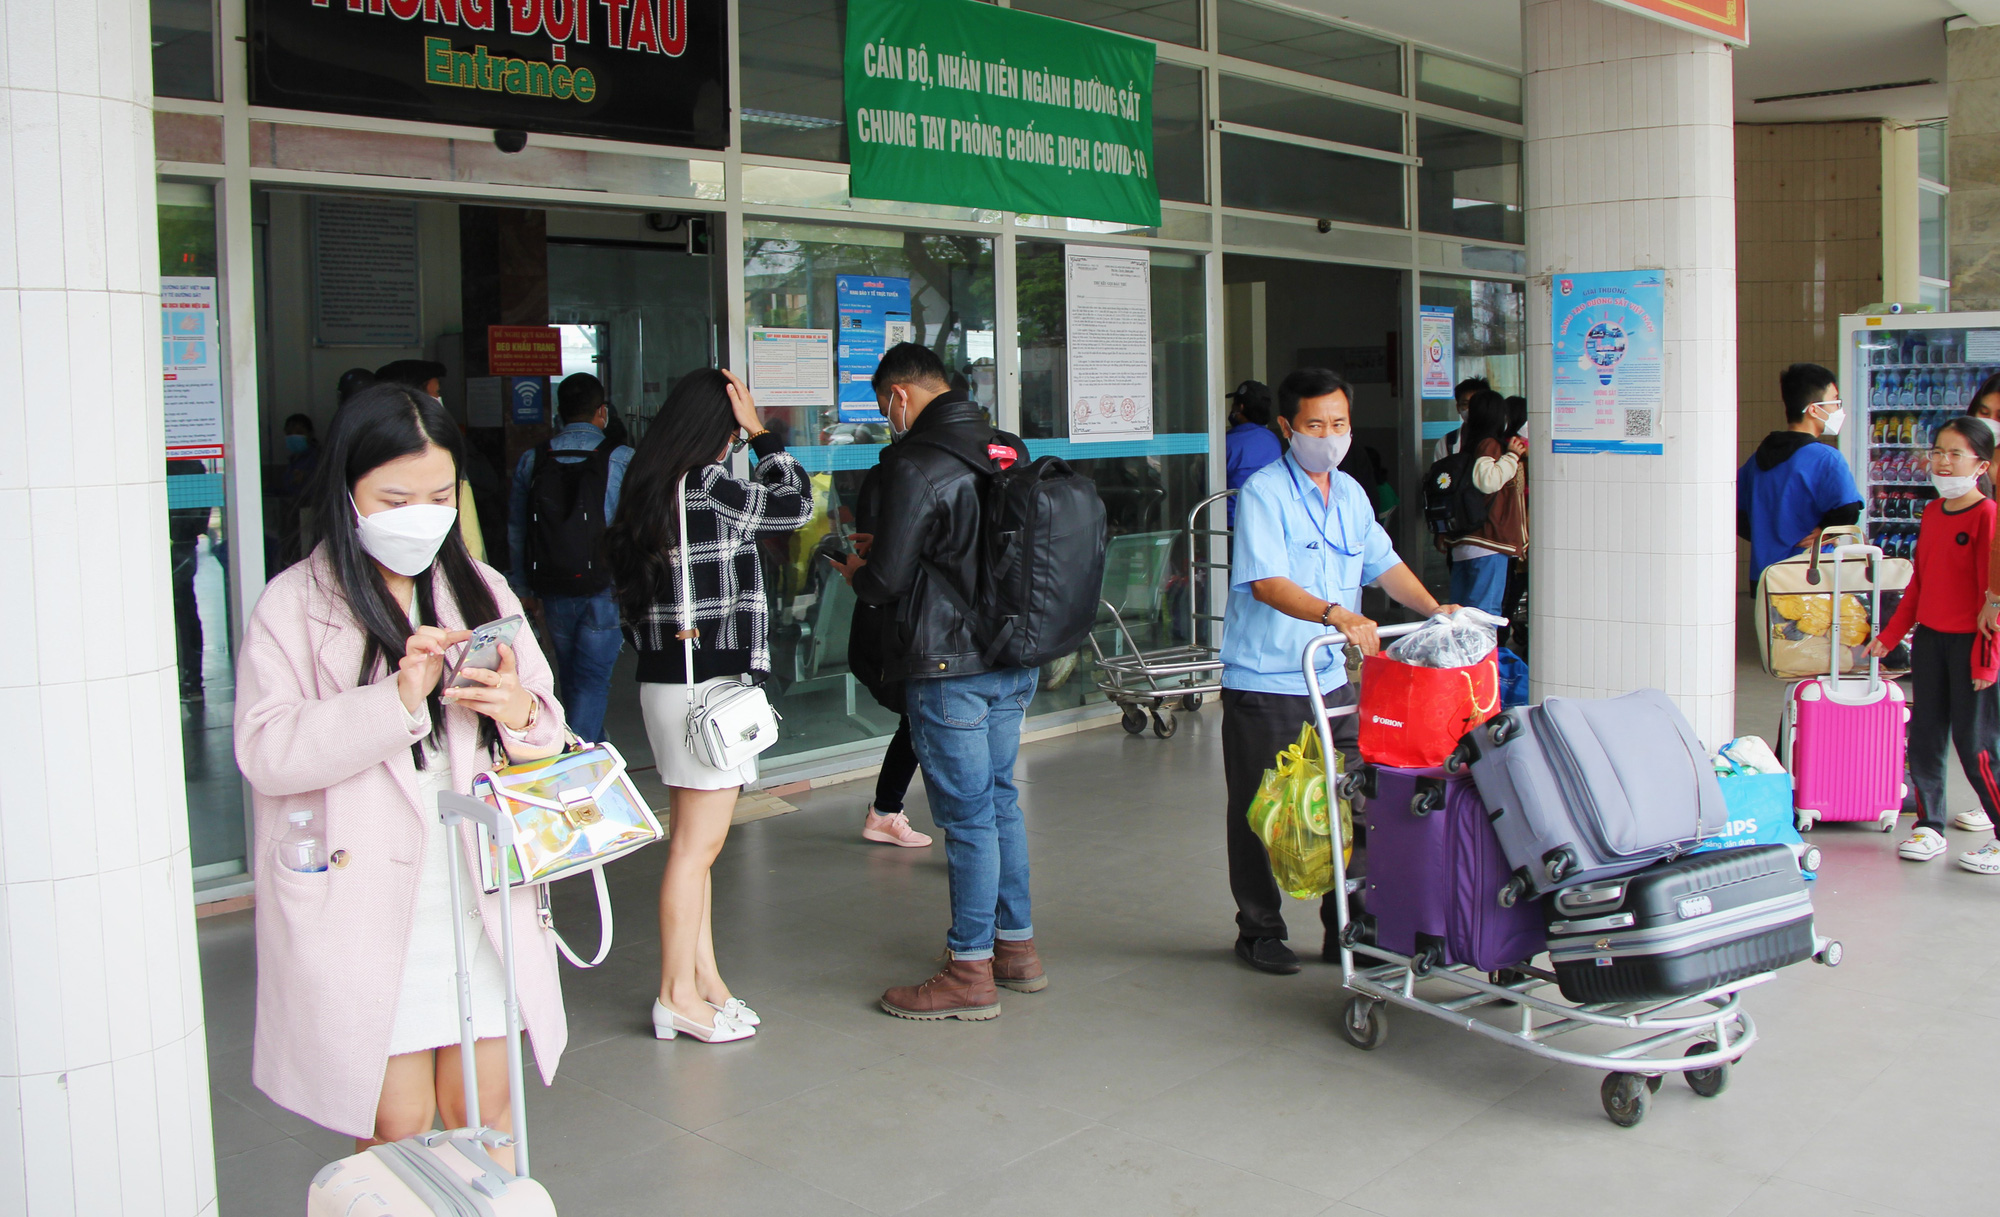 CLIP: Cận cảnh ga tàu, bến xe trong ngày cuối kỳ nghỉ Tết ở Đà Nẵng - Ảnh 3.